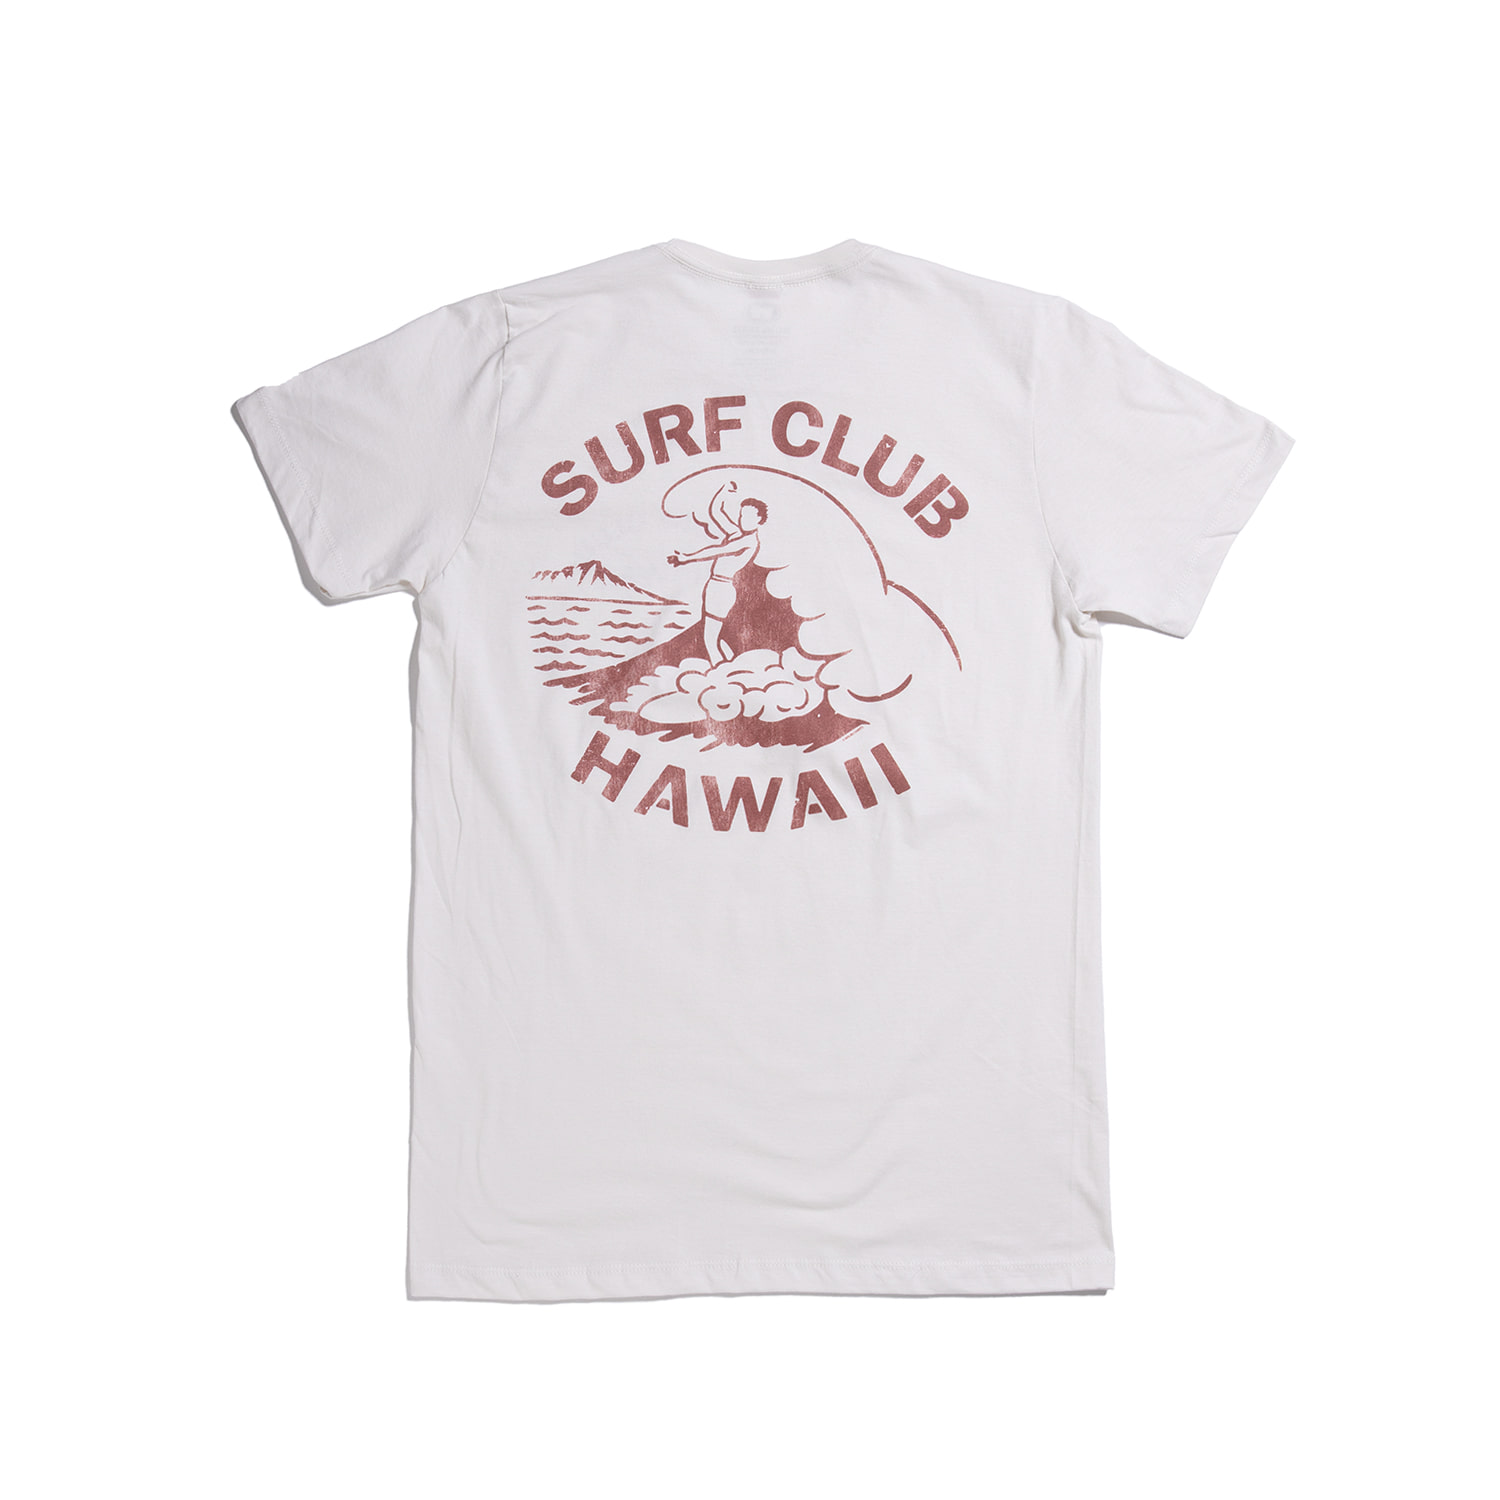 Surf Club Hawaii Tee